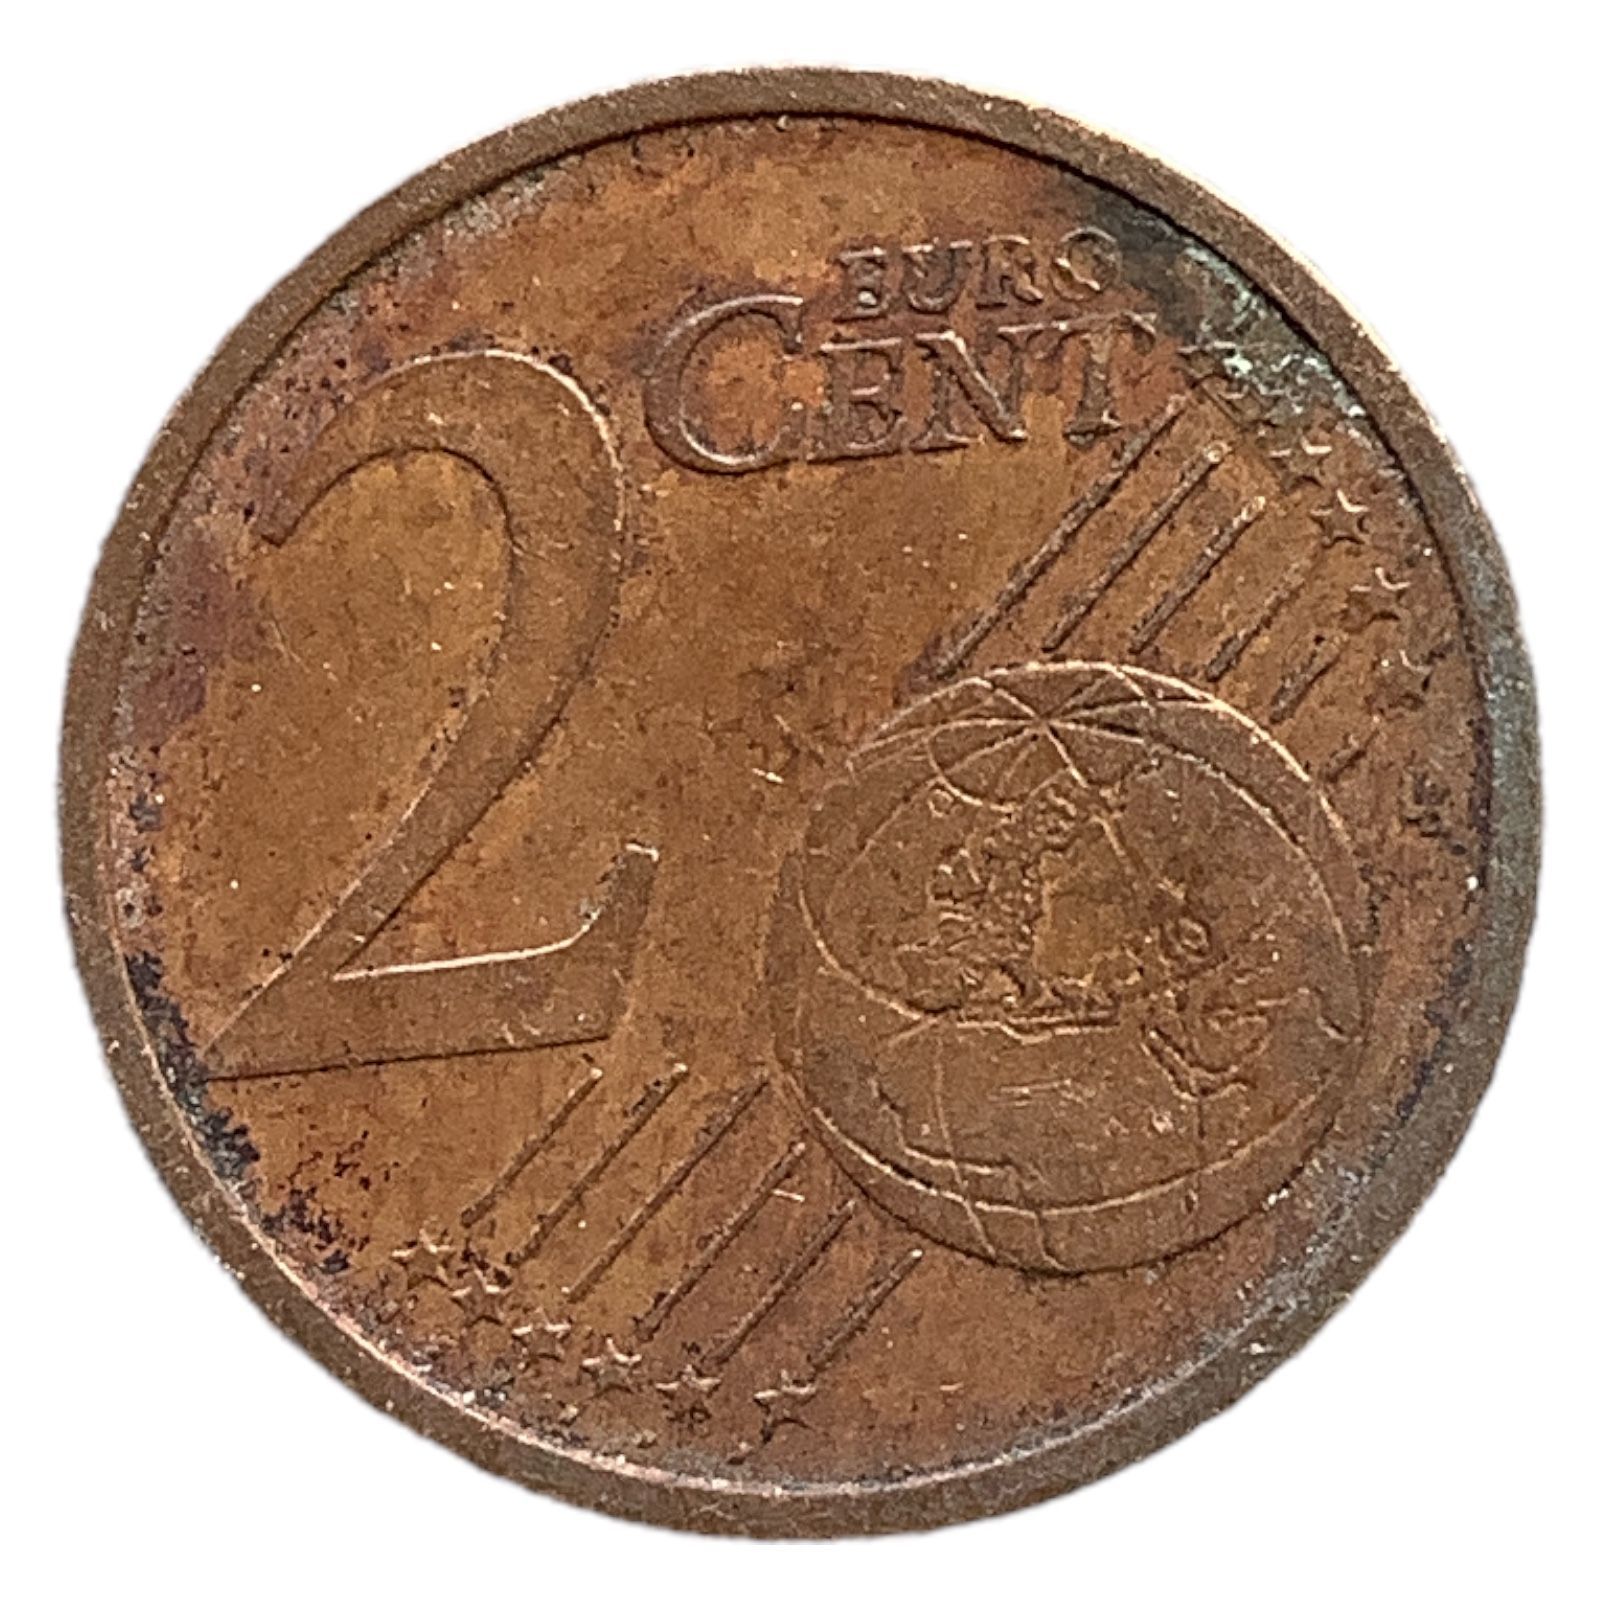 20 евроцентов в рублях. 2 Цента Германия. Монеты Англии 2 цента 2002. Цент монета. 2 Цента монета.